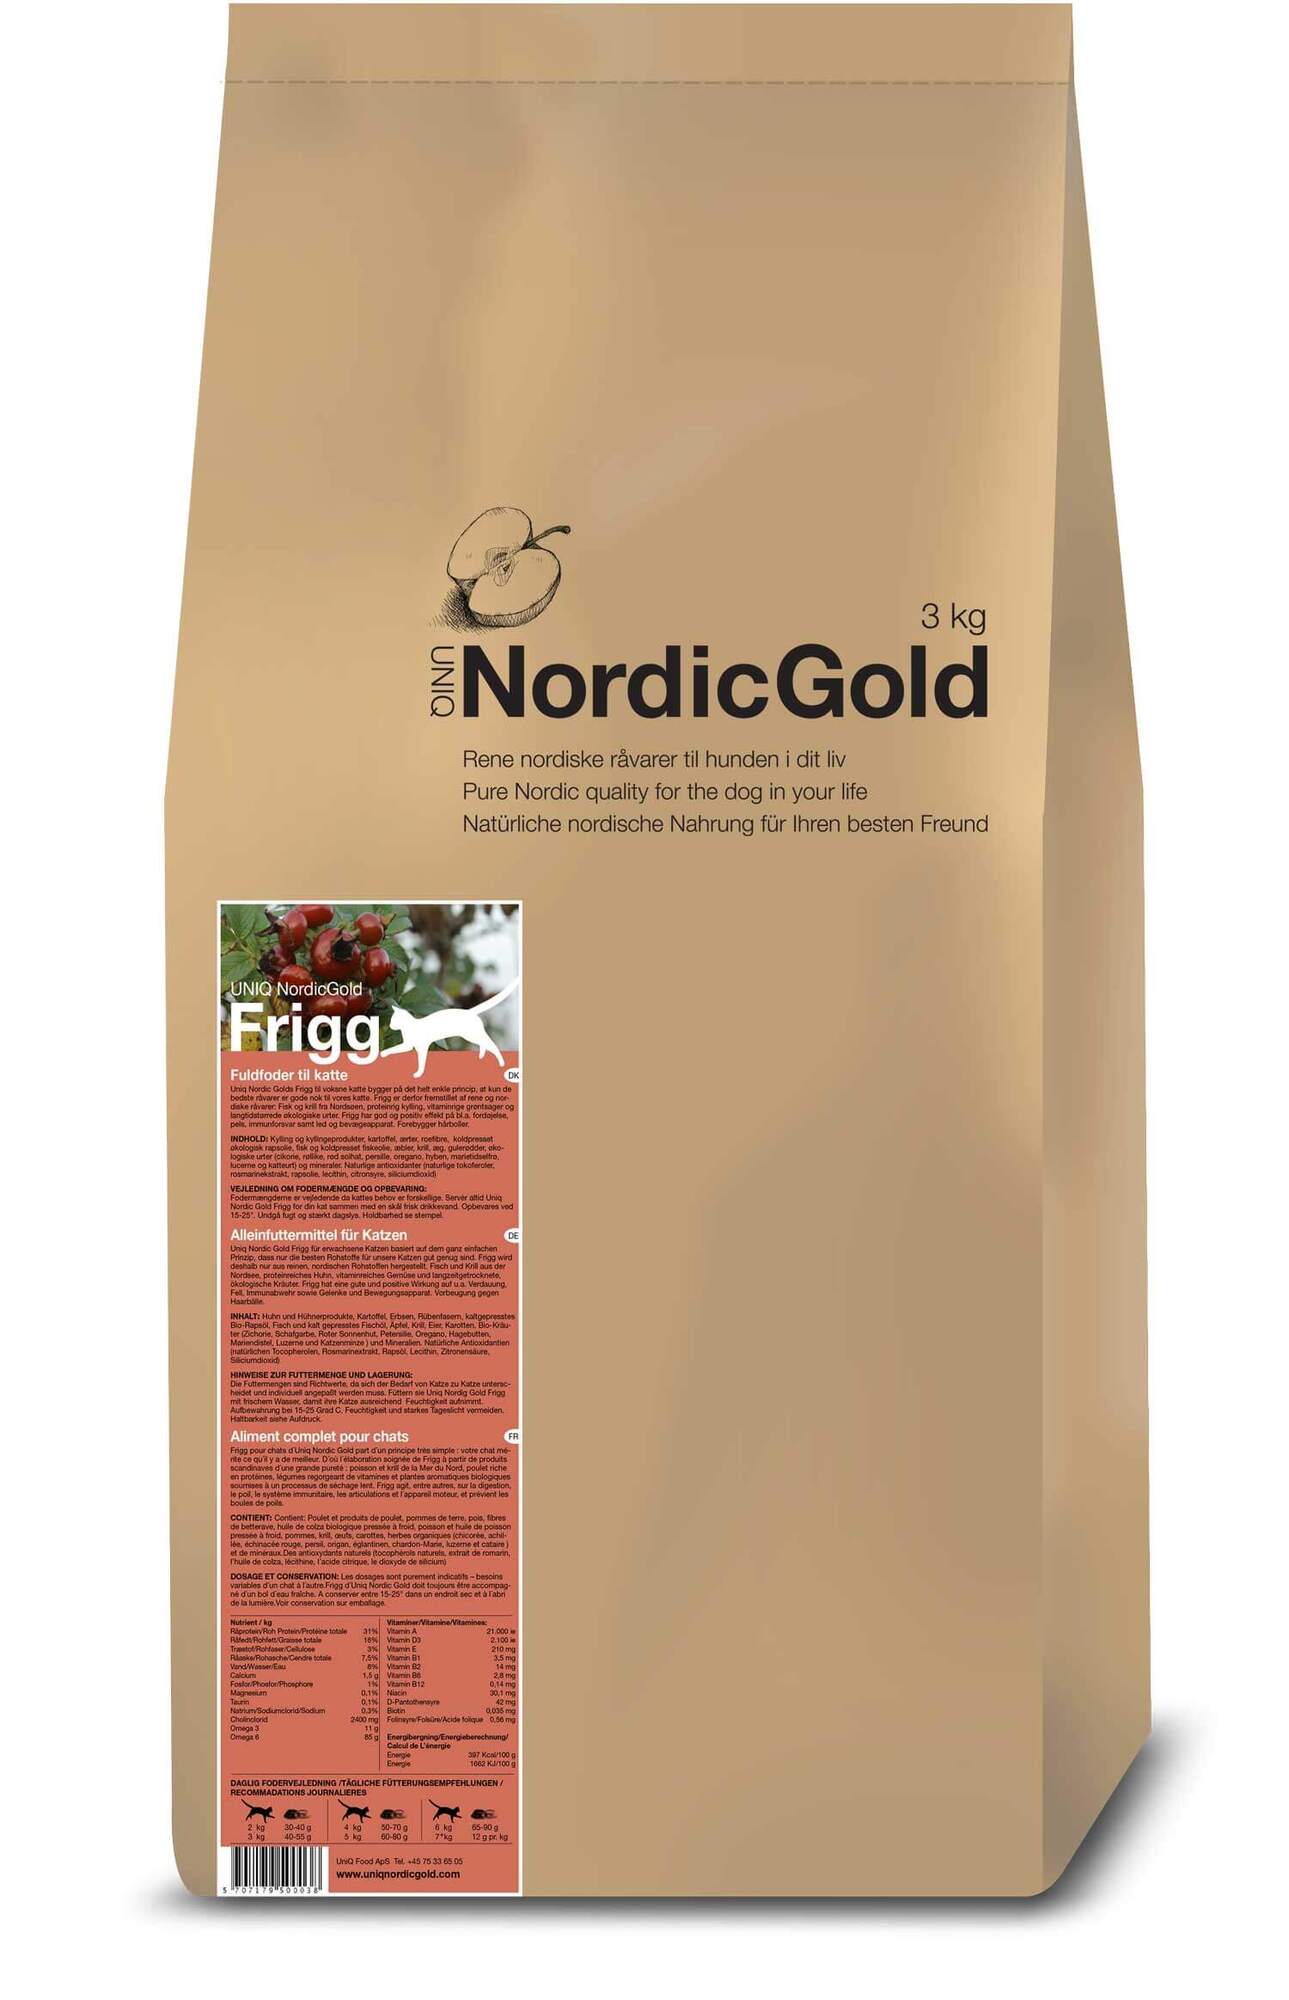 Nordic Gold Frigg - til den kræsne kat - 3 kg thumbnail